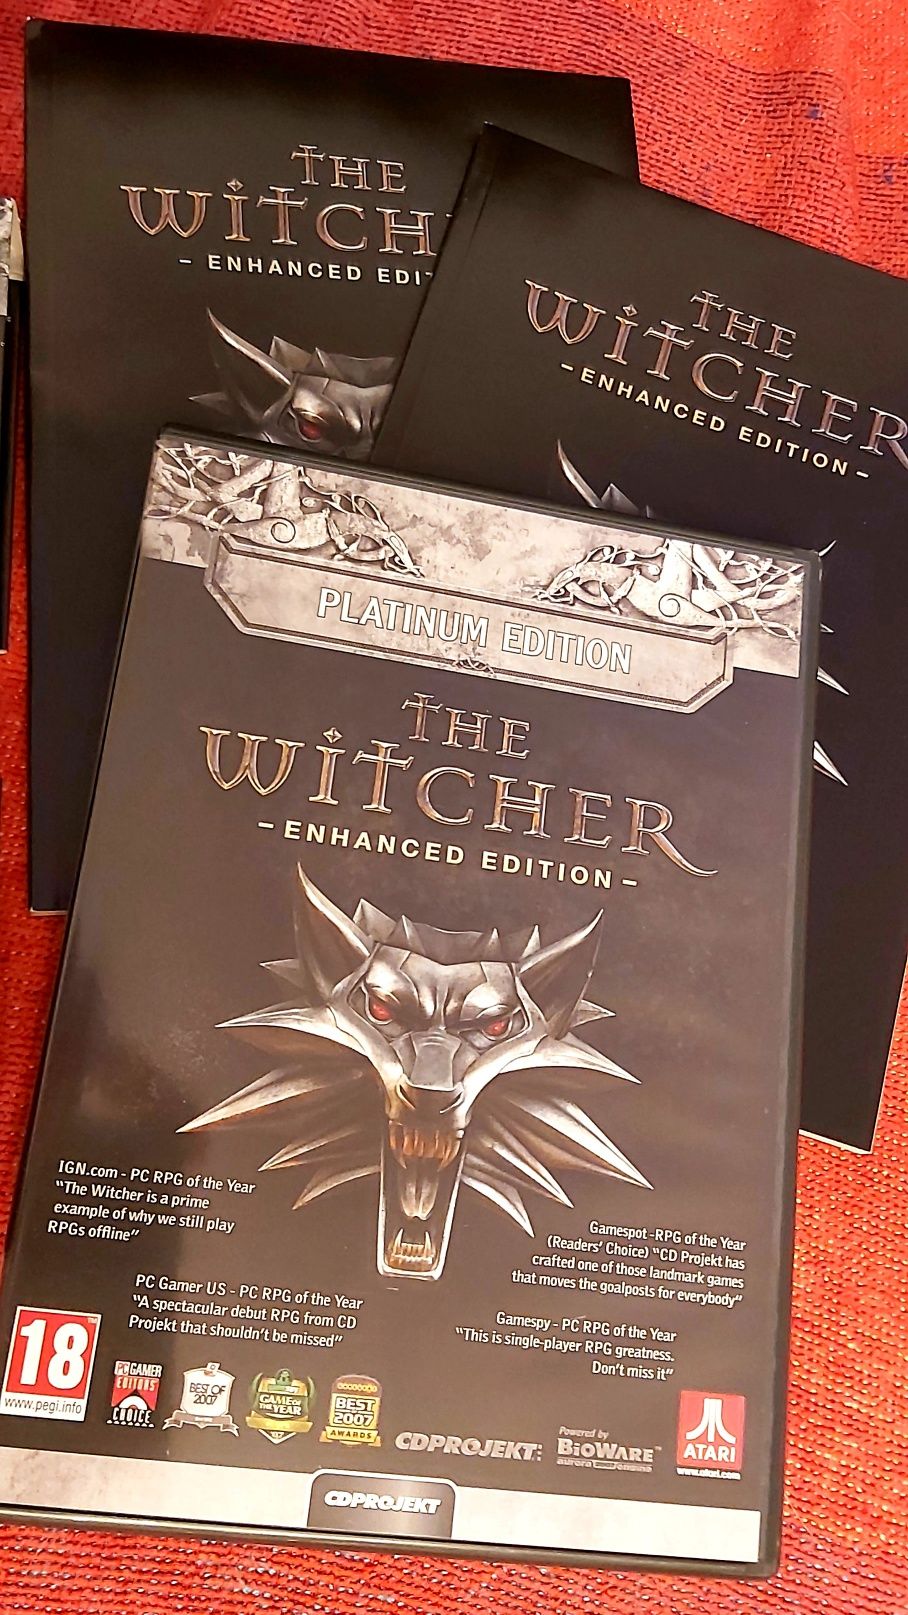 The Witcher - Jogo PC - Enhanced Edition
Jogo e manuais: Game Guide e